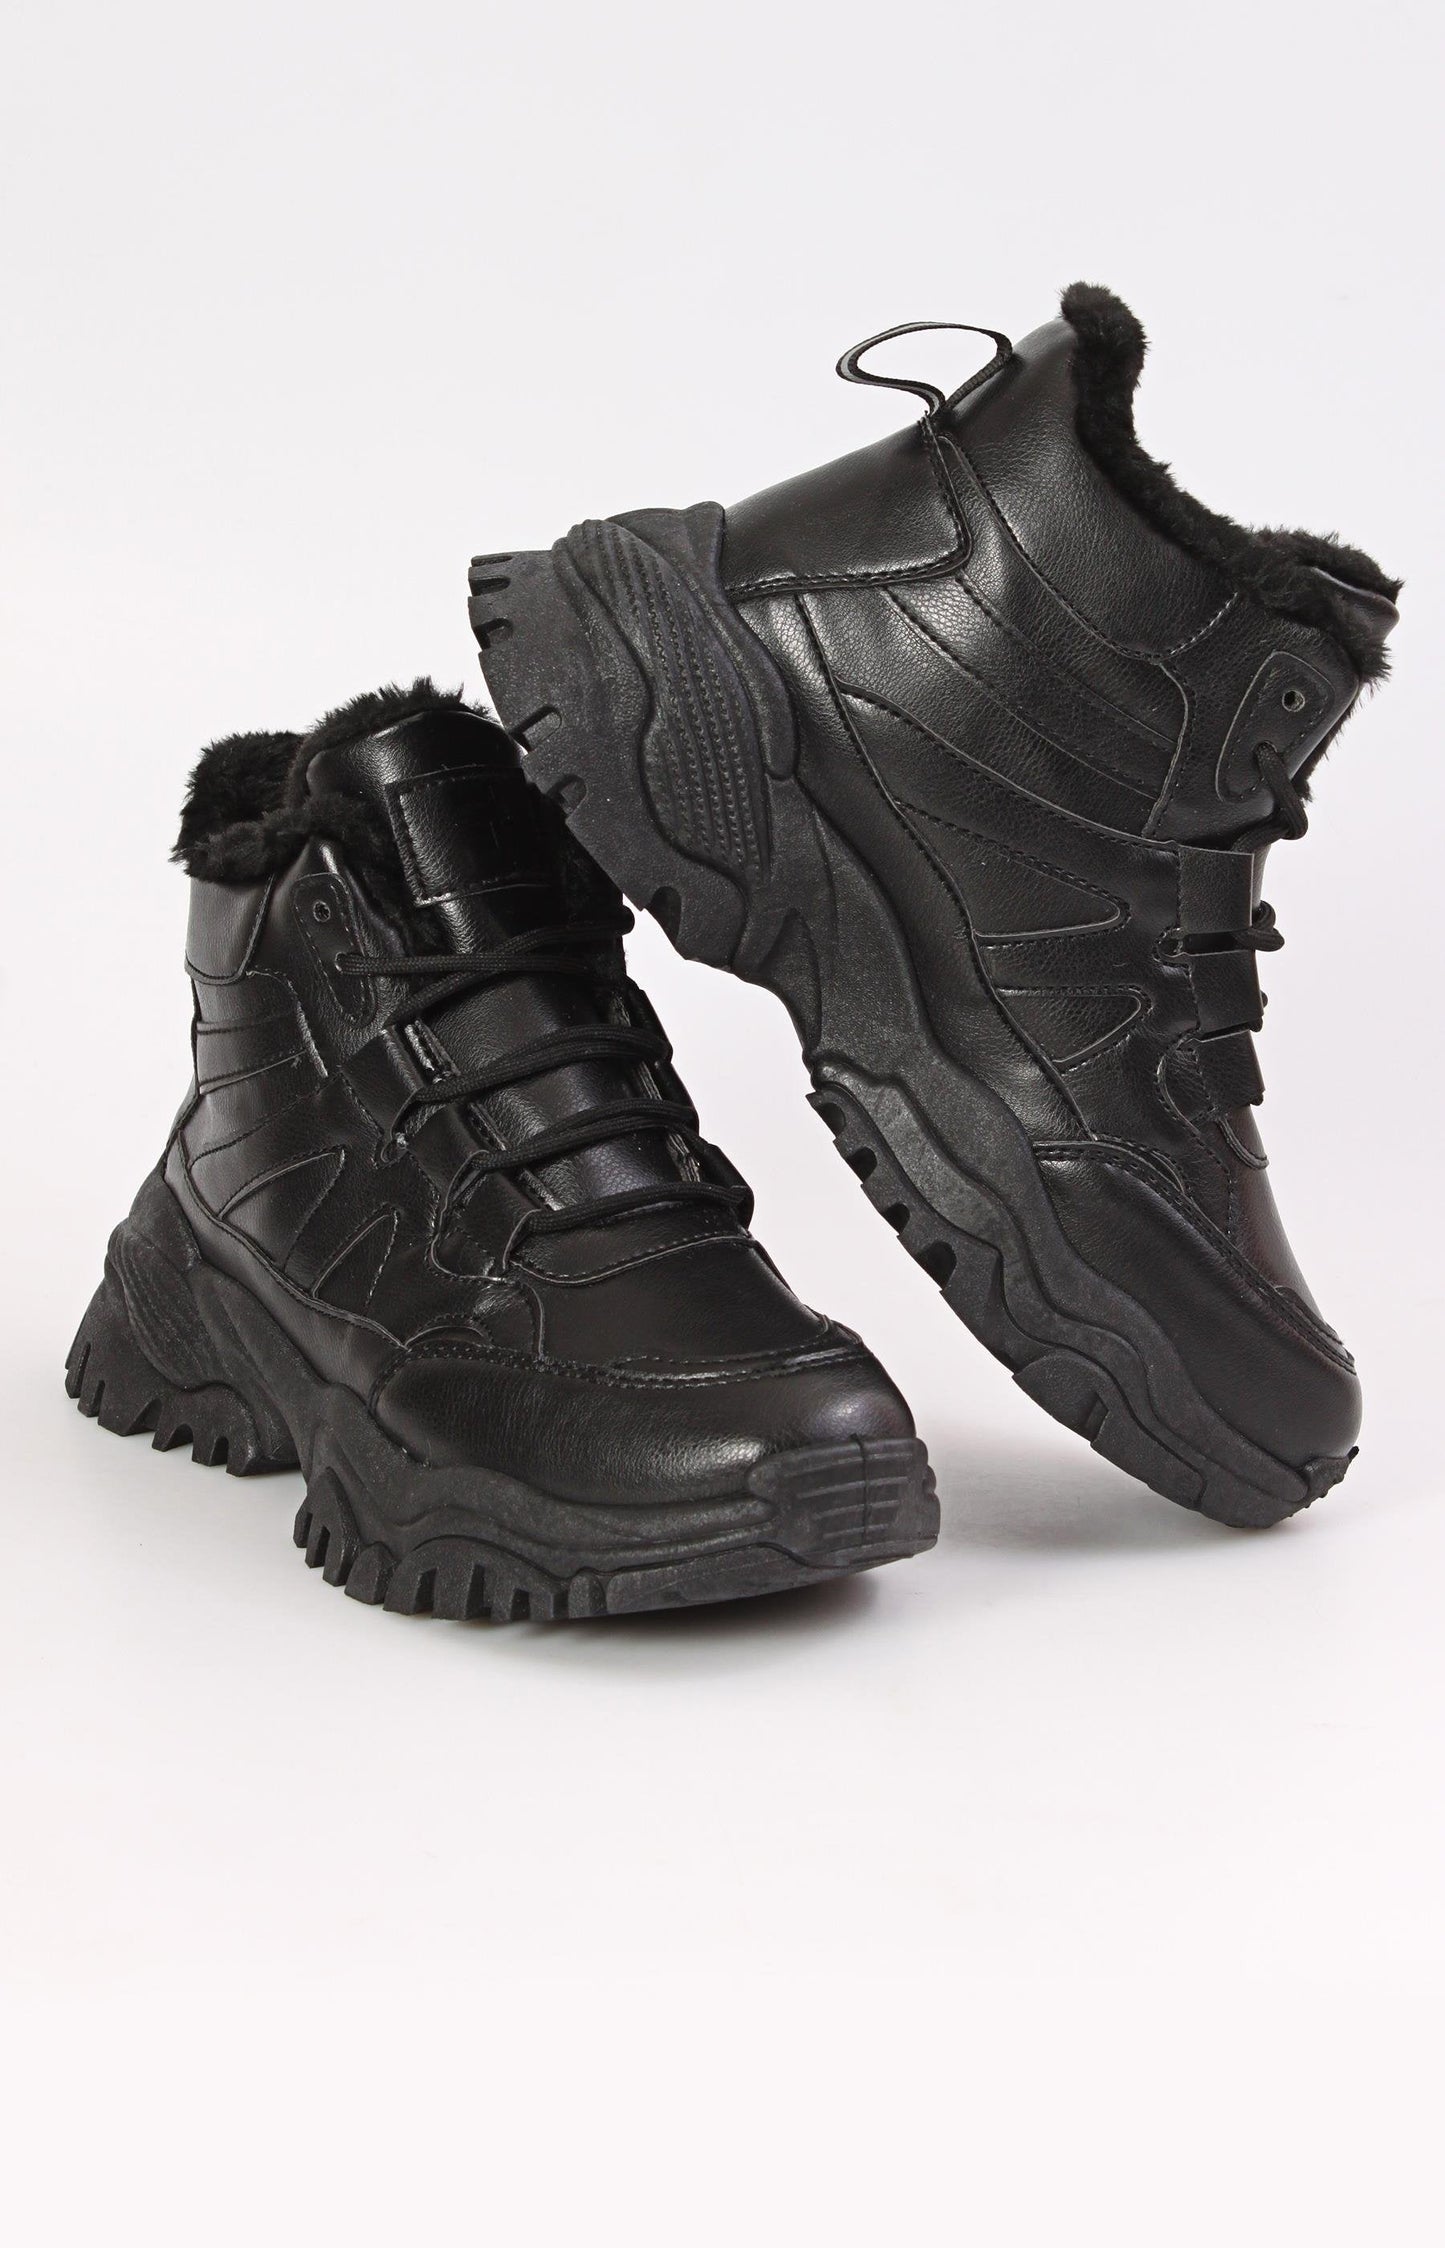 Ladies' Outdoor Boots - Black